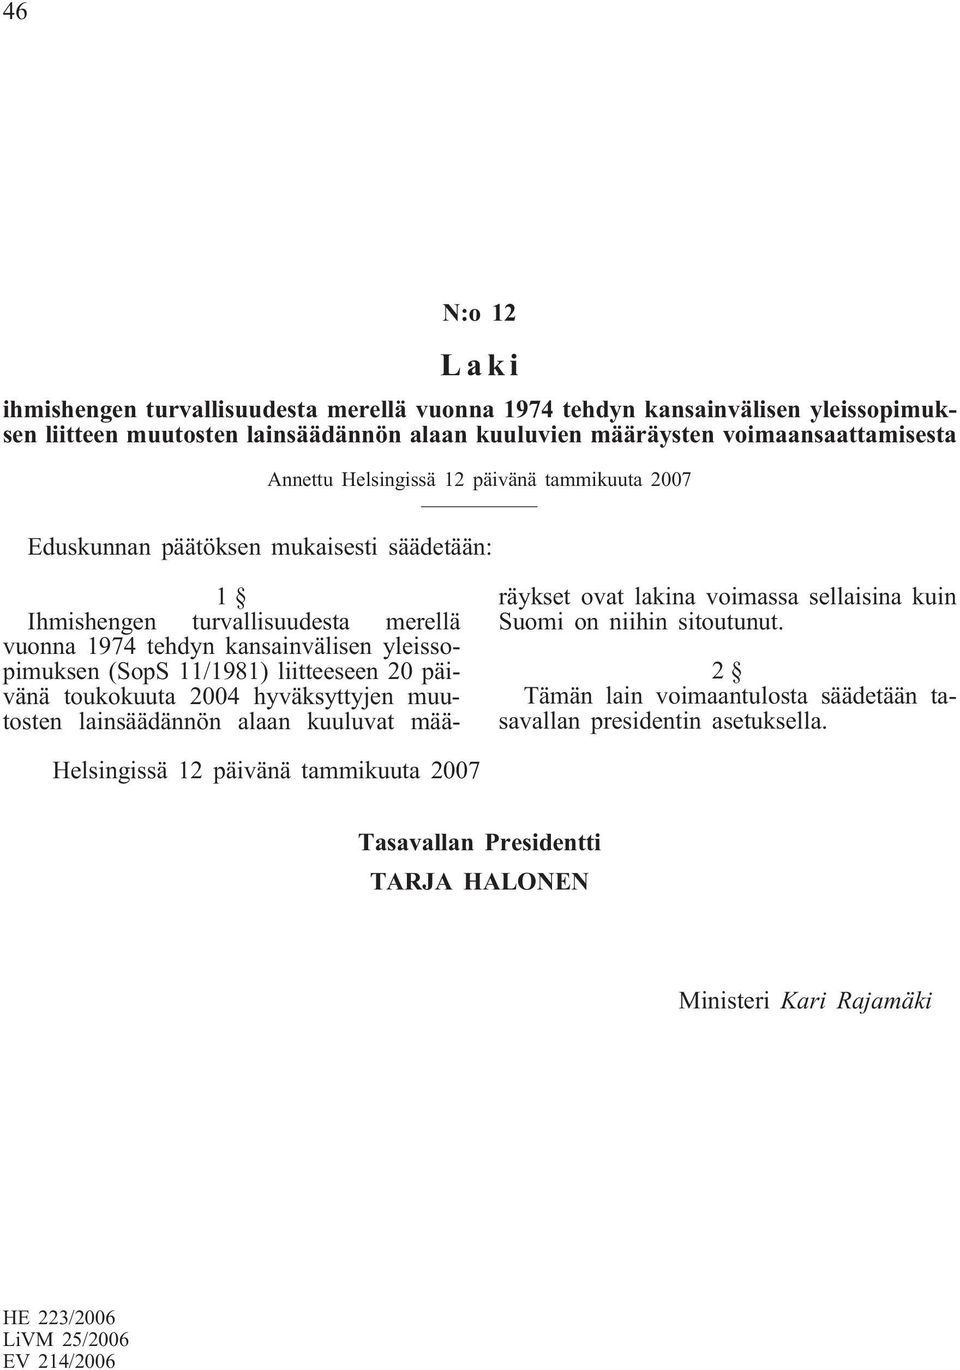 11/1981) liitteeseen 20 päivänä toukokuuta 2004 hyväksyttyjen muutosten lainsäädännön alaan kuuluvat määräykset ovat lakina voimassa sellaisina kuin Suomi on niihin sitoutunut.